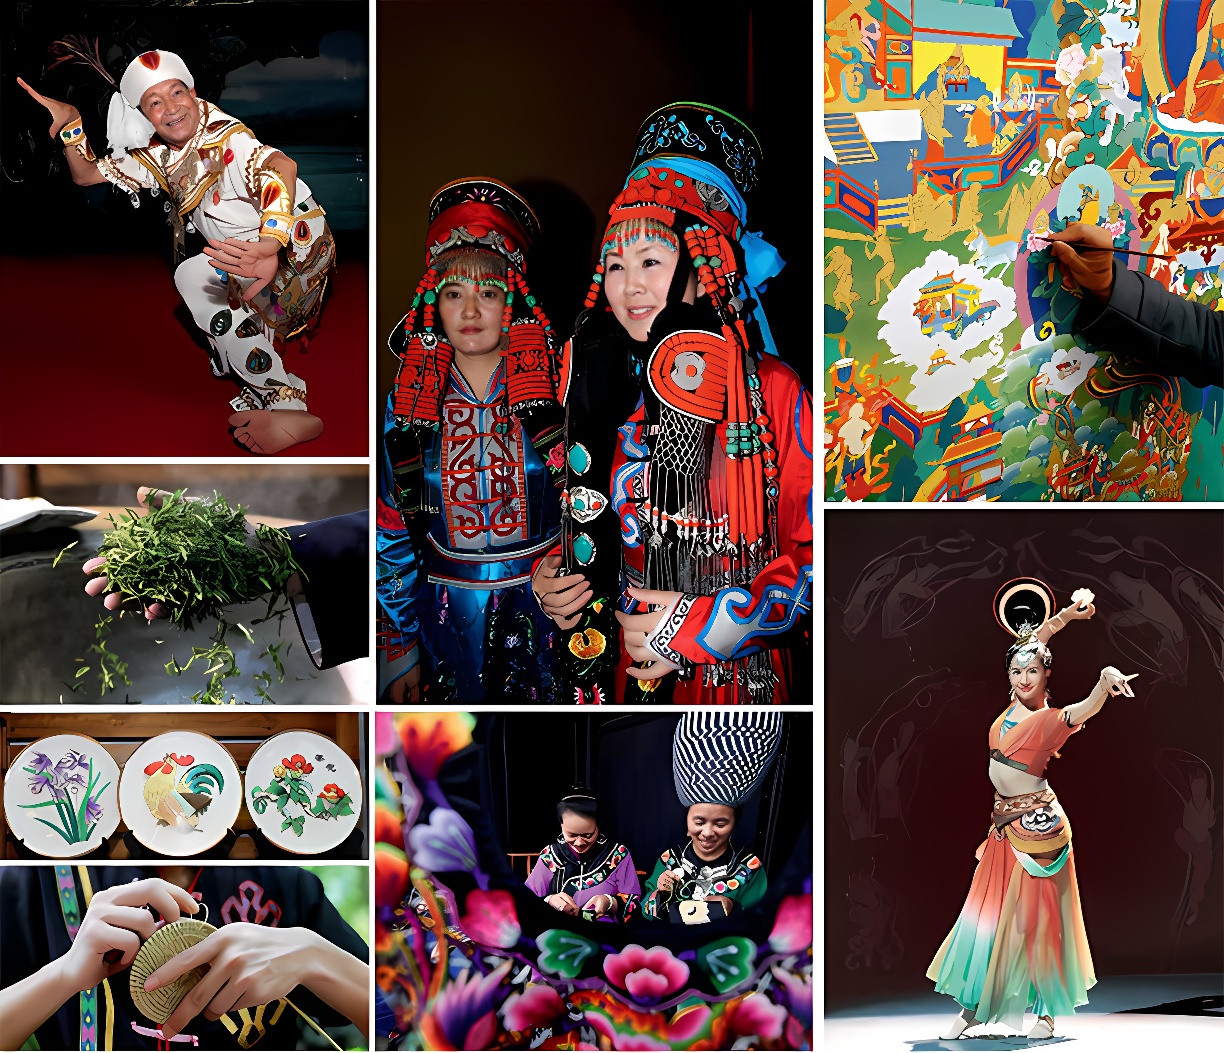 图片展示多元文化场景：传统服饰、舞蹈表演、绘画创作、料理准备，以及一位穿着现代服装的人物。多彩、多样的生活片段。